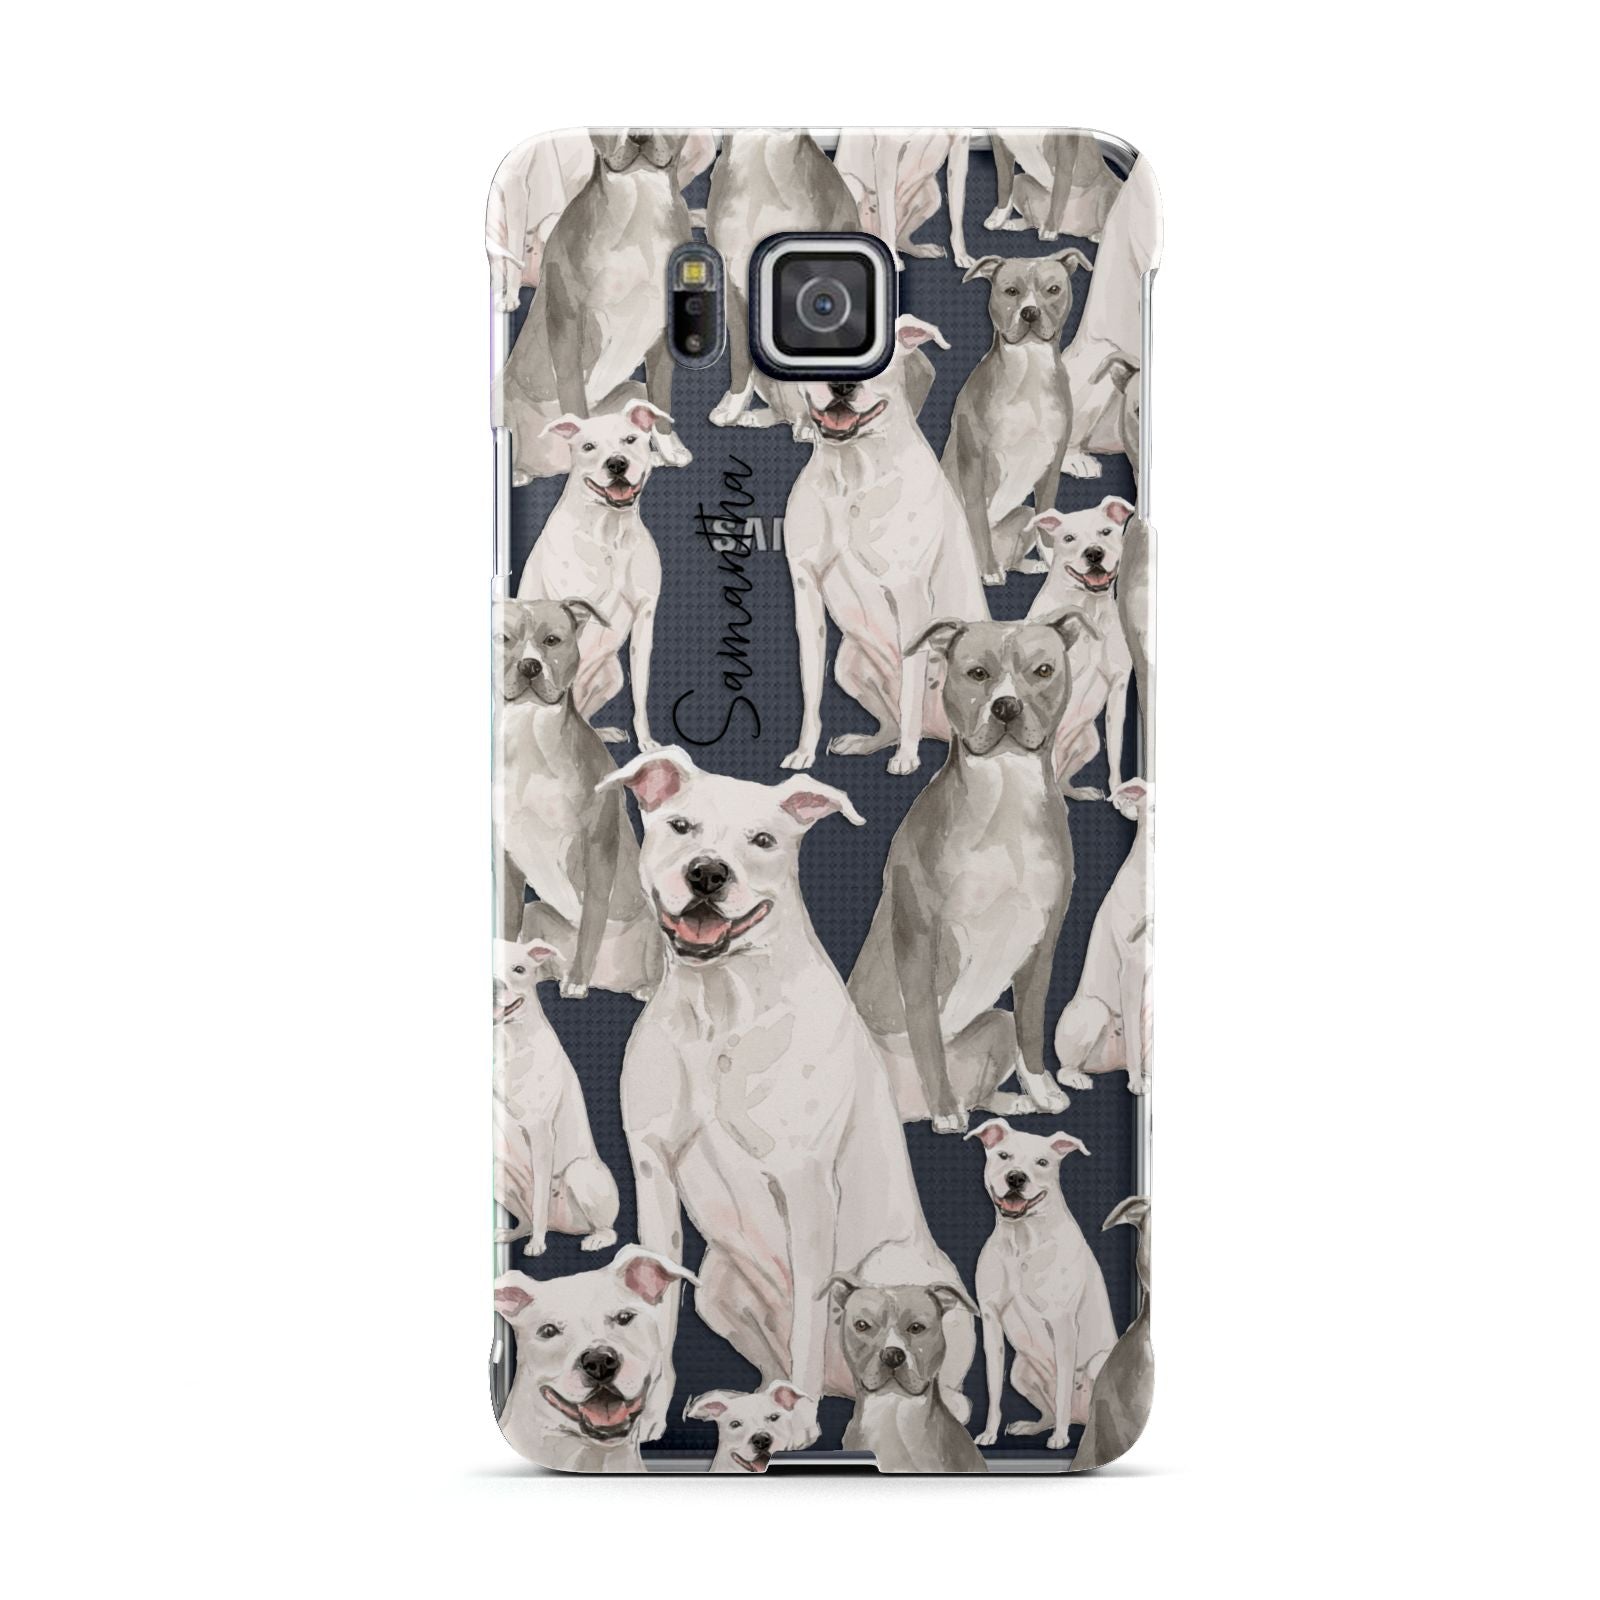 Personalised Staffordshire Dog Samsung Galaxy Alpha Case